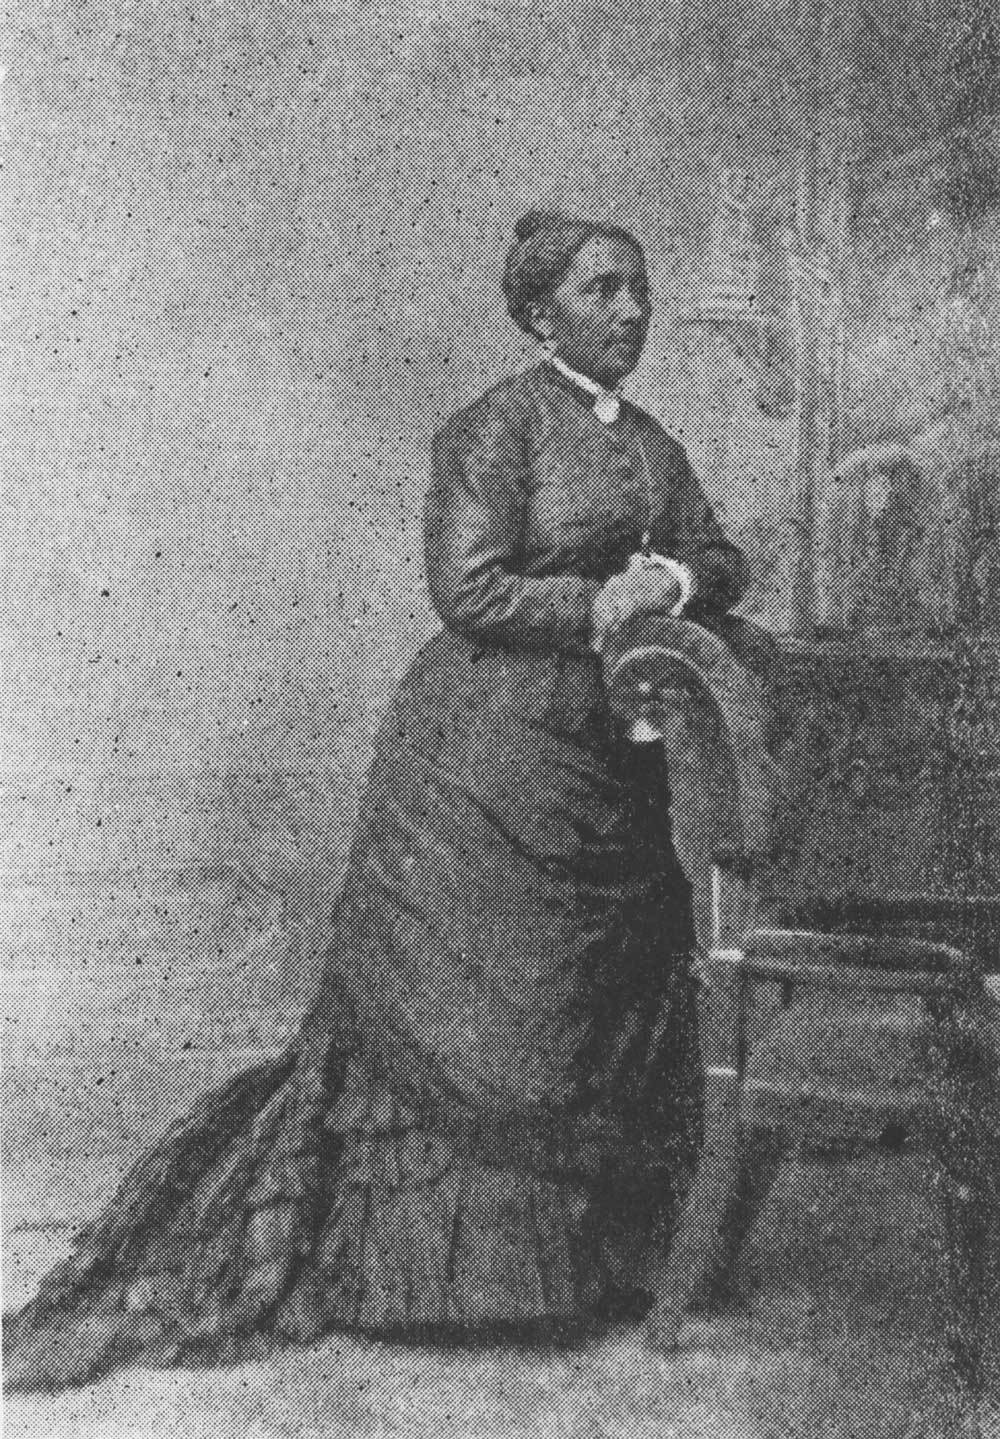 Un croquis représentant une femme vêtue d’une robe du XIXe siècle appuyée contre une chaise.